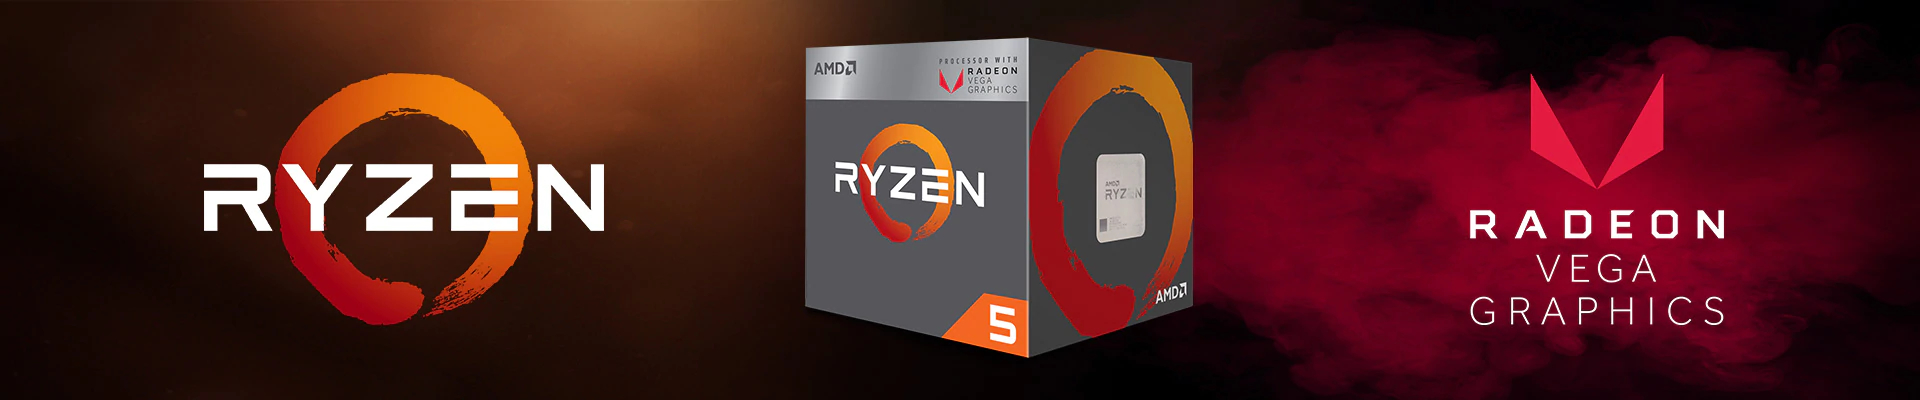 Folyamatosan javul a Ryzen-ek teljestmnye, az AMD folyamatosan adagolja a szoftveres javtsokat